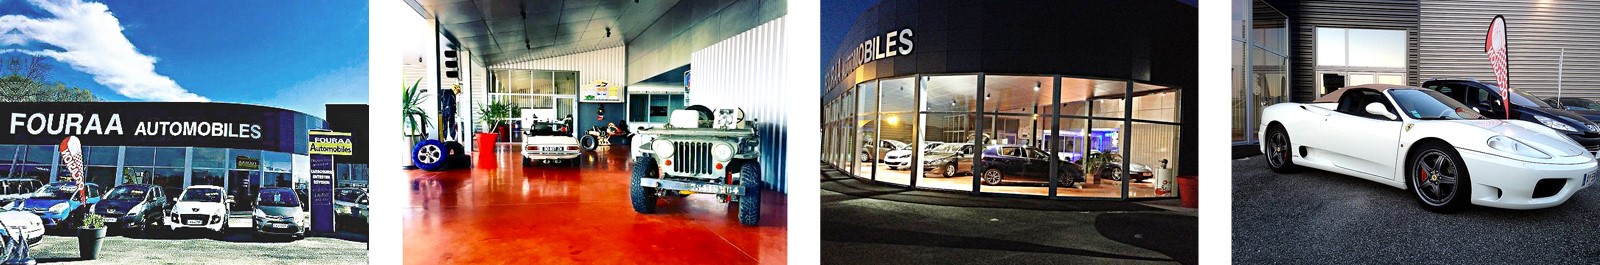 Fouraa Automobiles | Garages automobiles, réparation, dépannage et prêt de véhicules | Nay, Bordes (64)